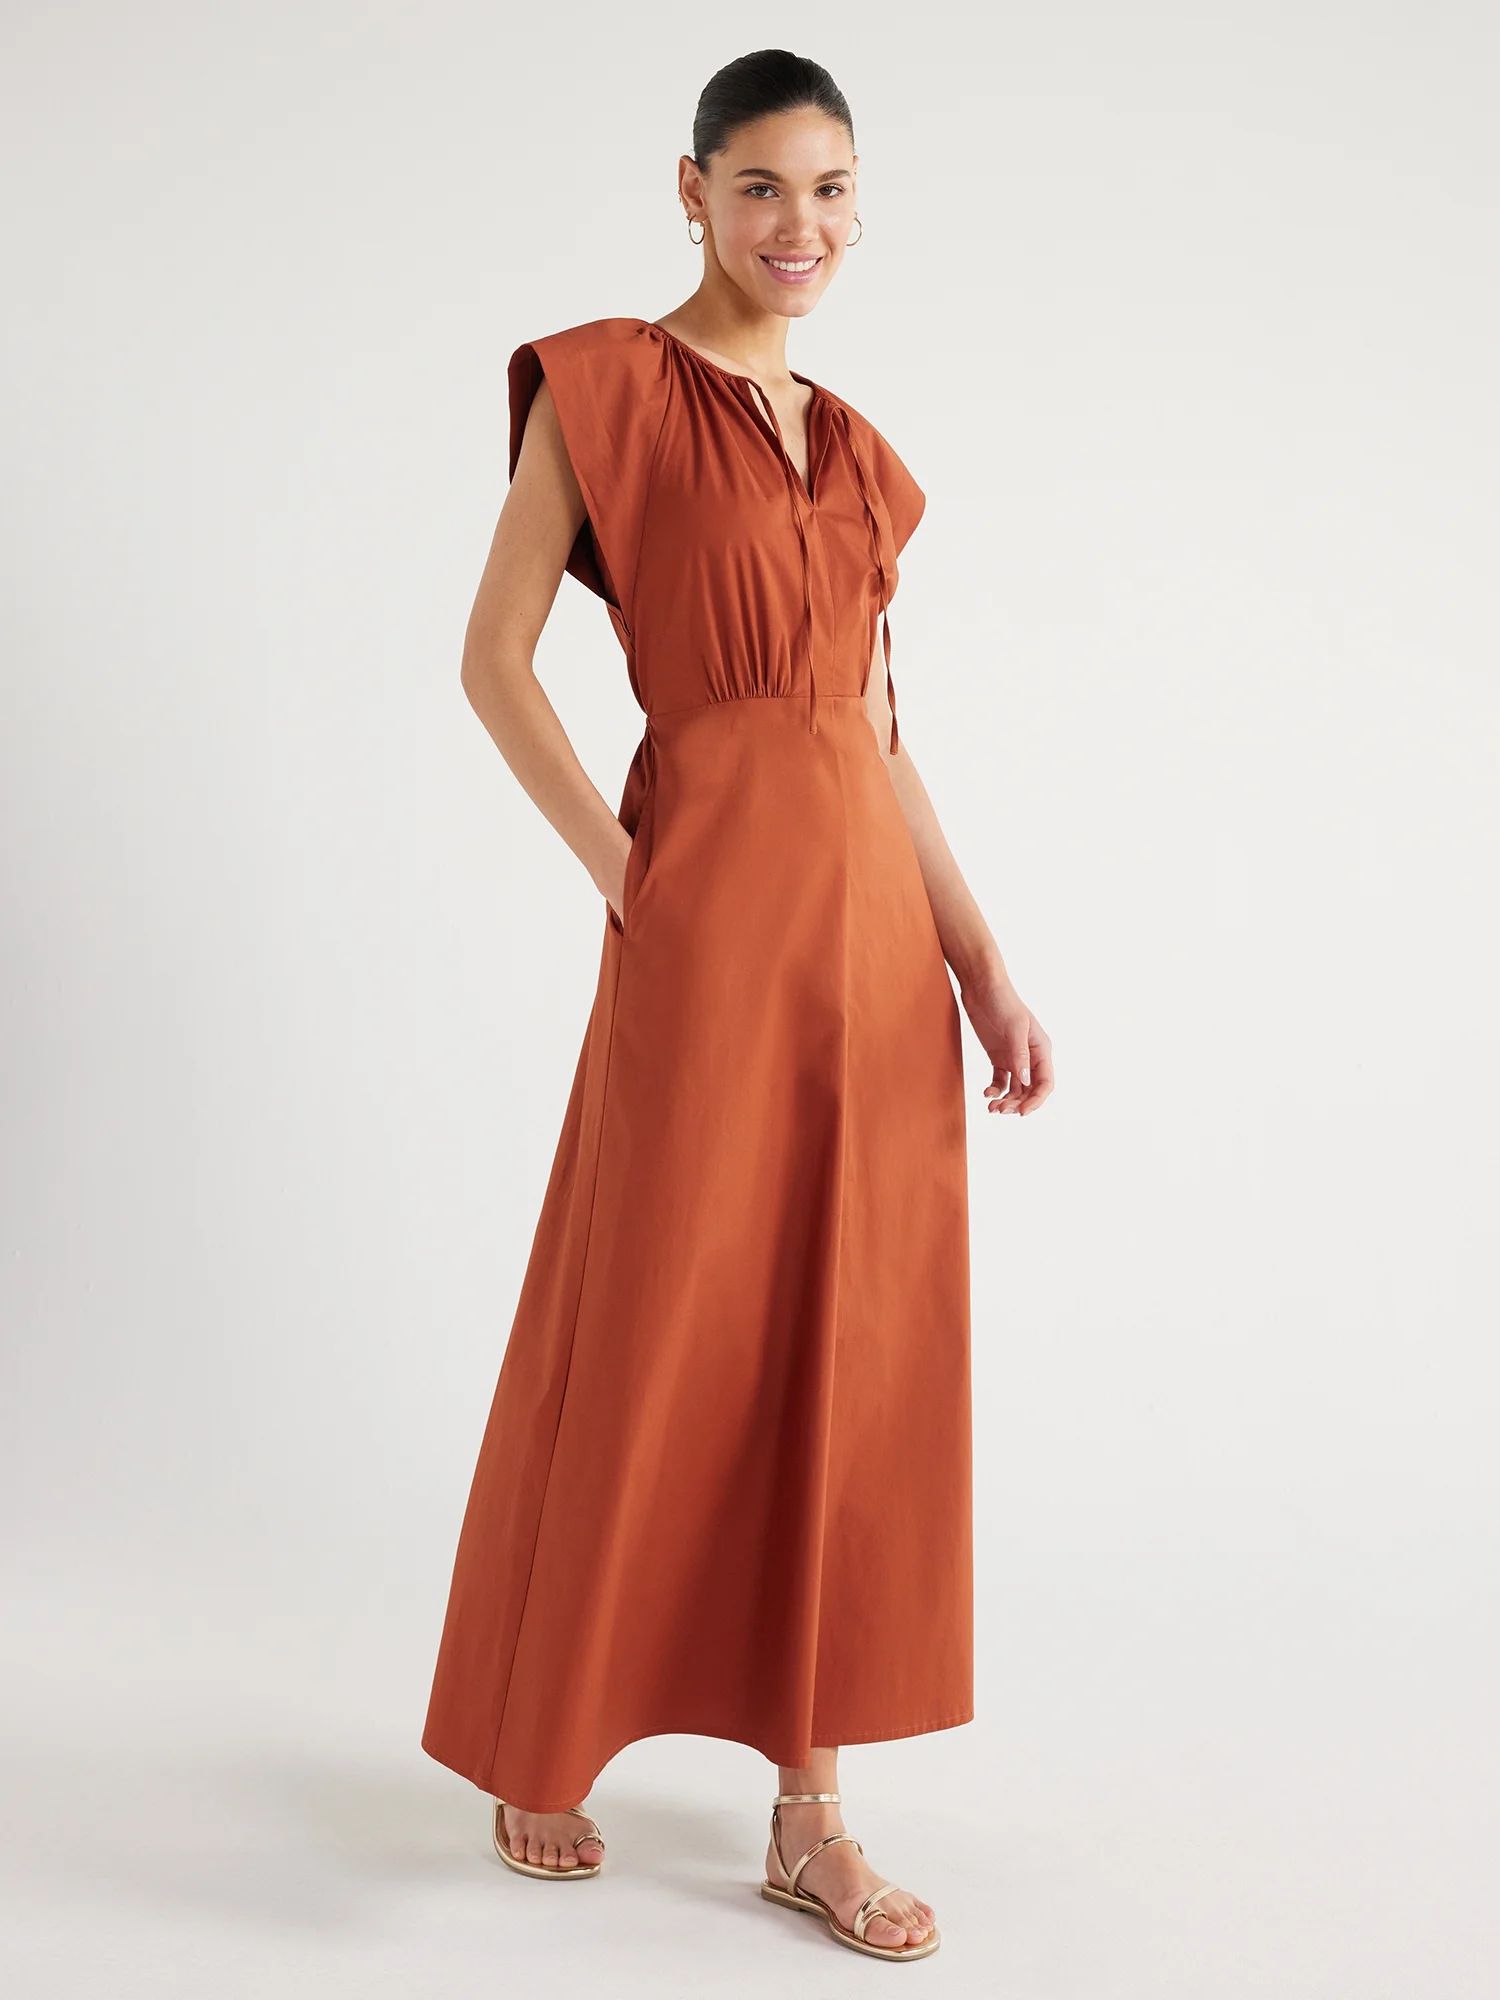 Scoop Women's Tie Neck Poplin Maxi Dress with Pockets, Sizes XS-XXL | Walmart (US)